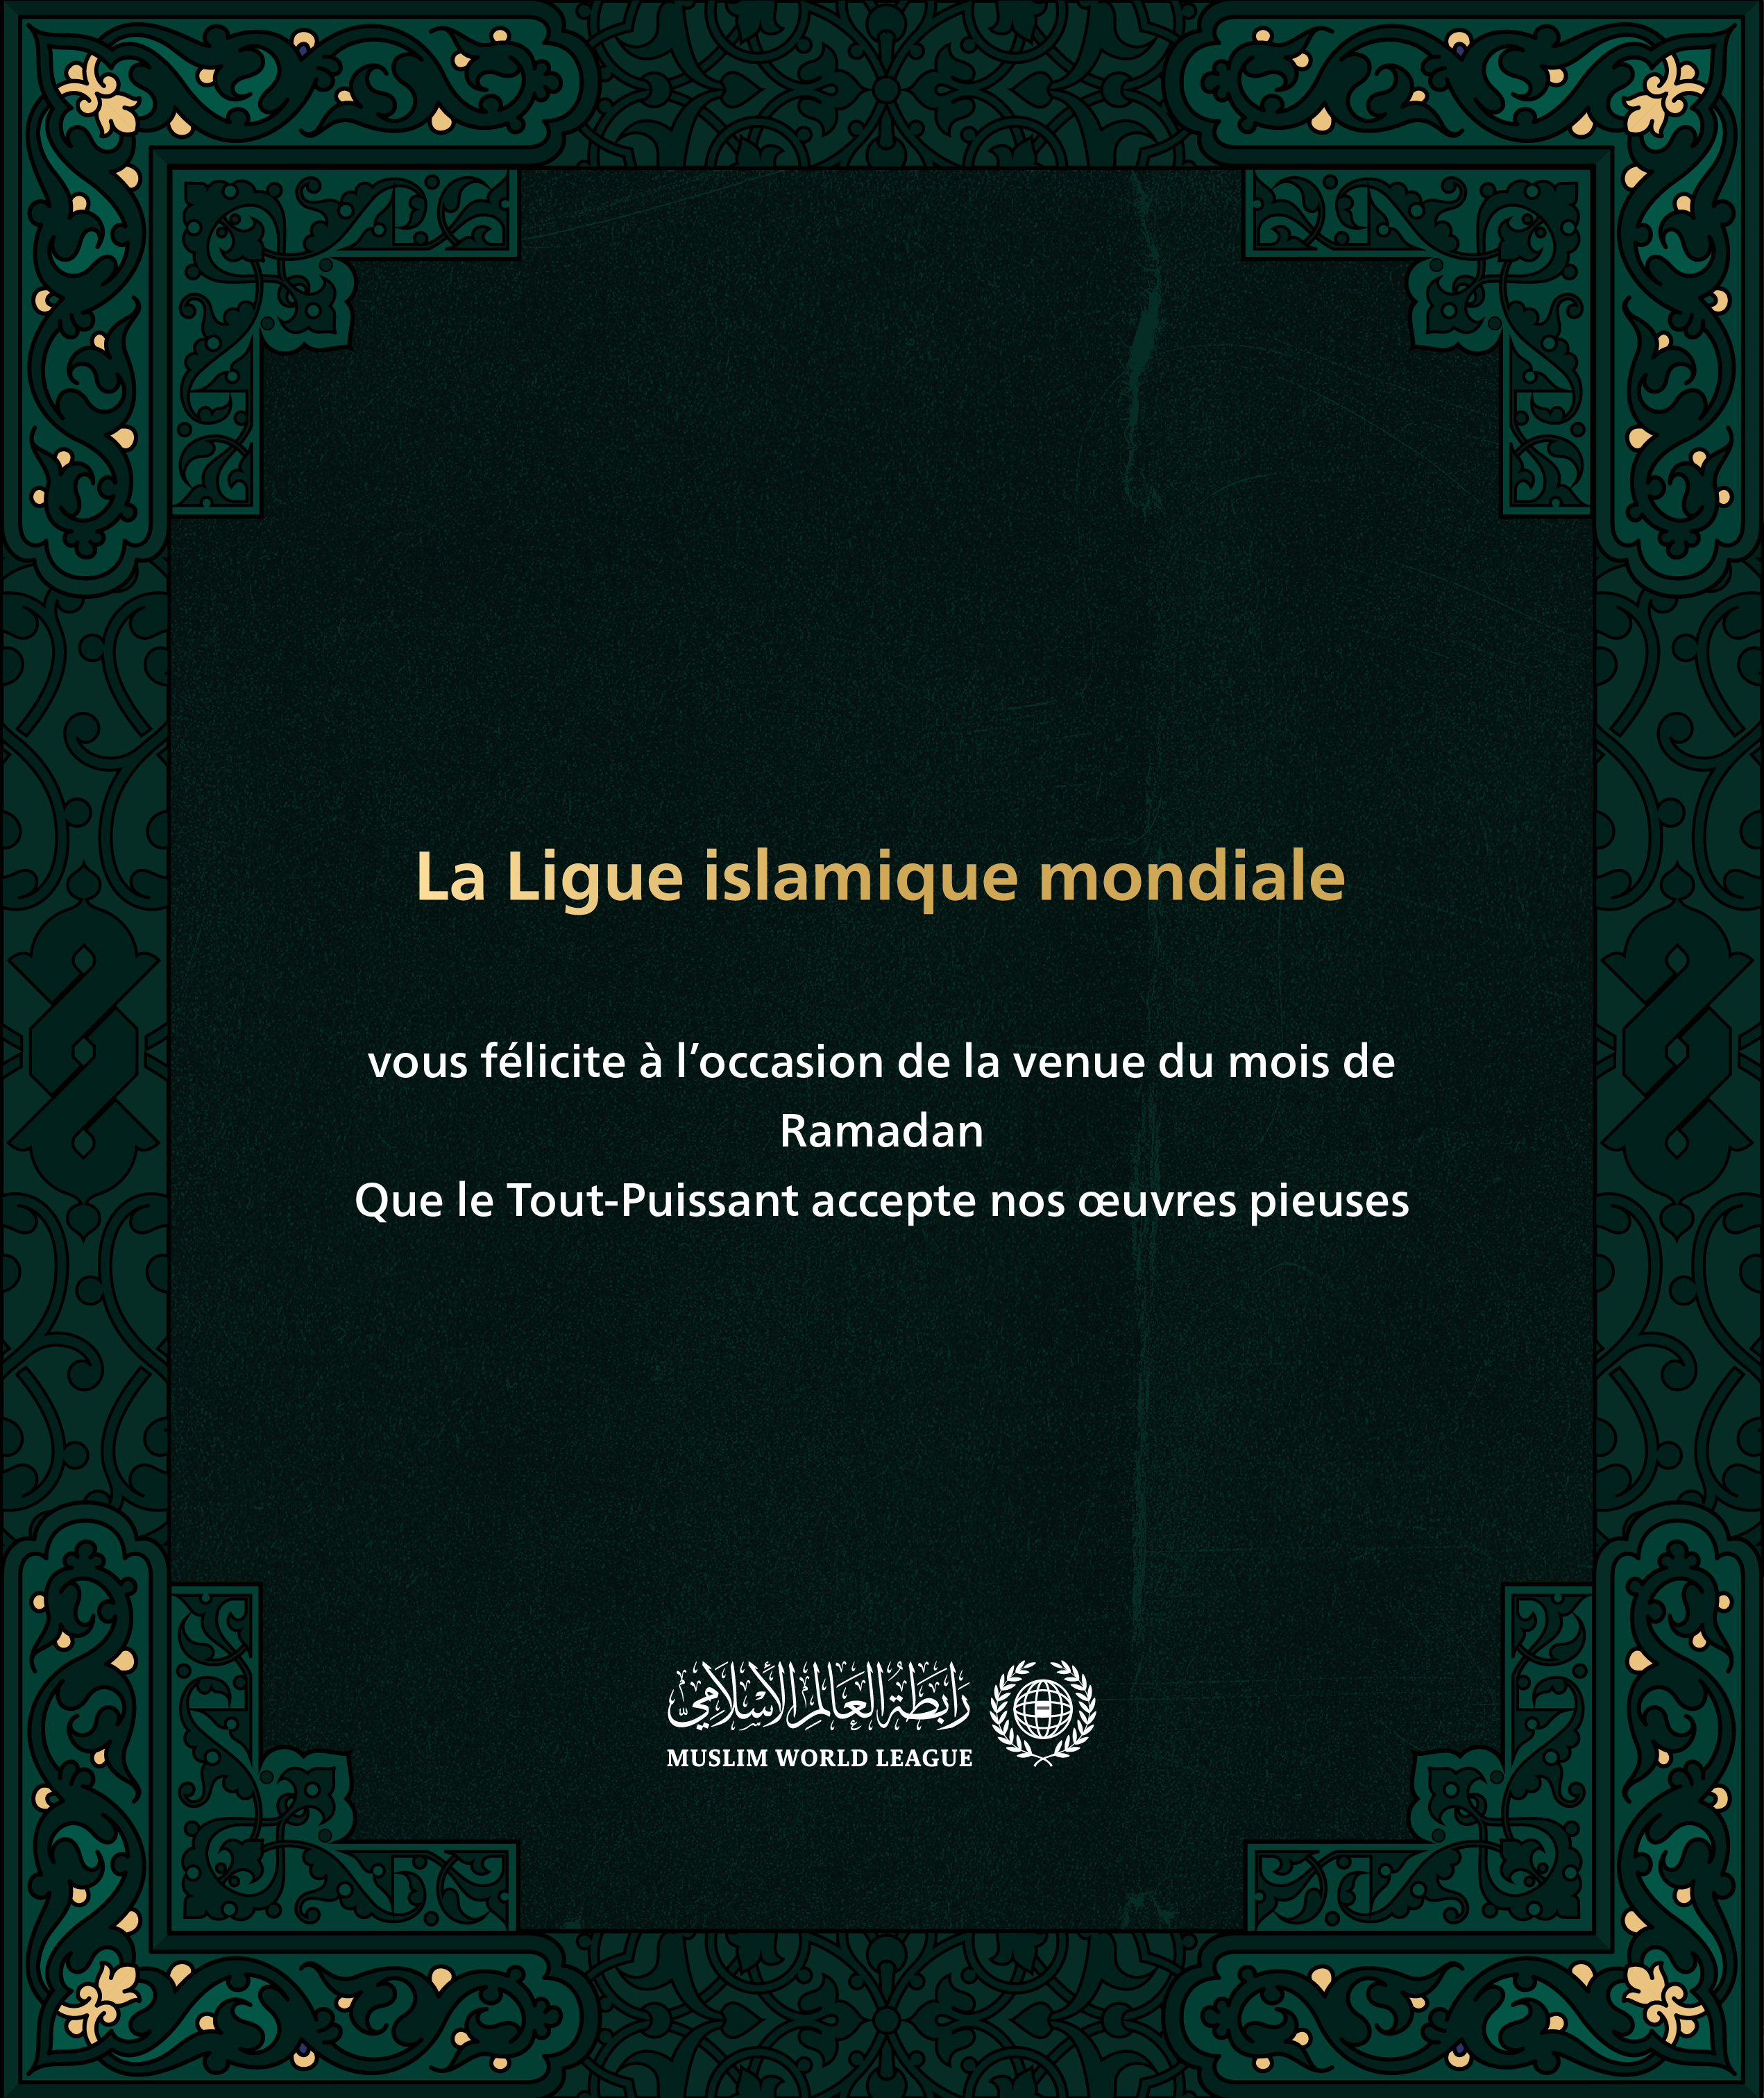 La Ligueislamiquemondiale vous félicite à l’occasion de la venue du mois de Ramadan, que le Tout-Puissant accepte nos œuvres pieuses.